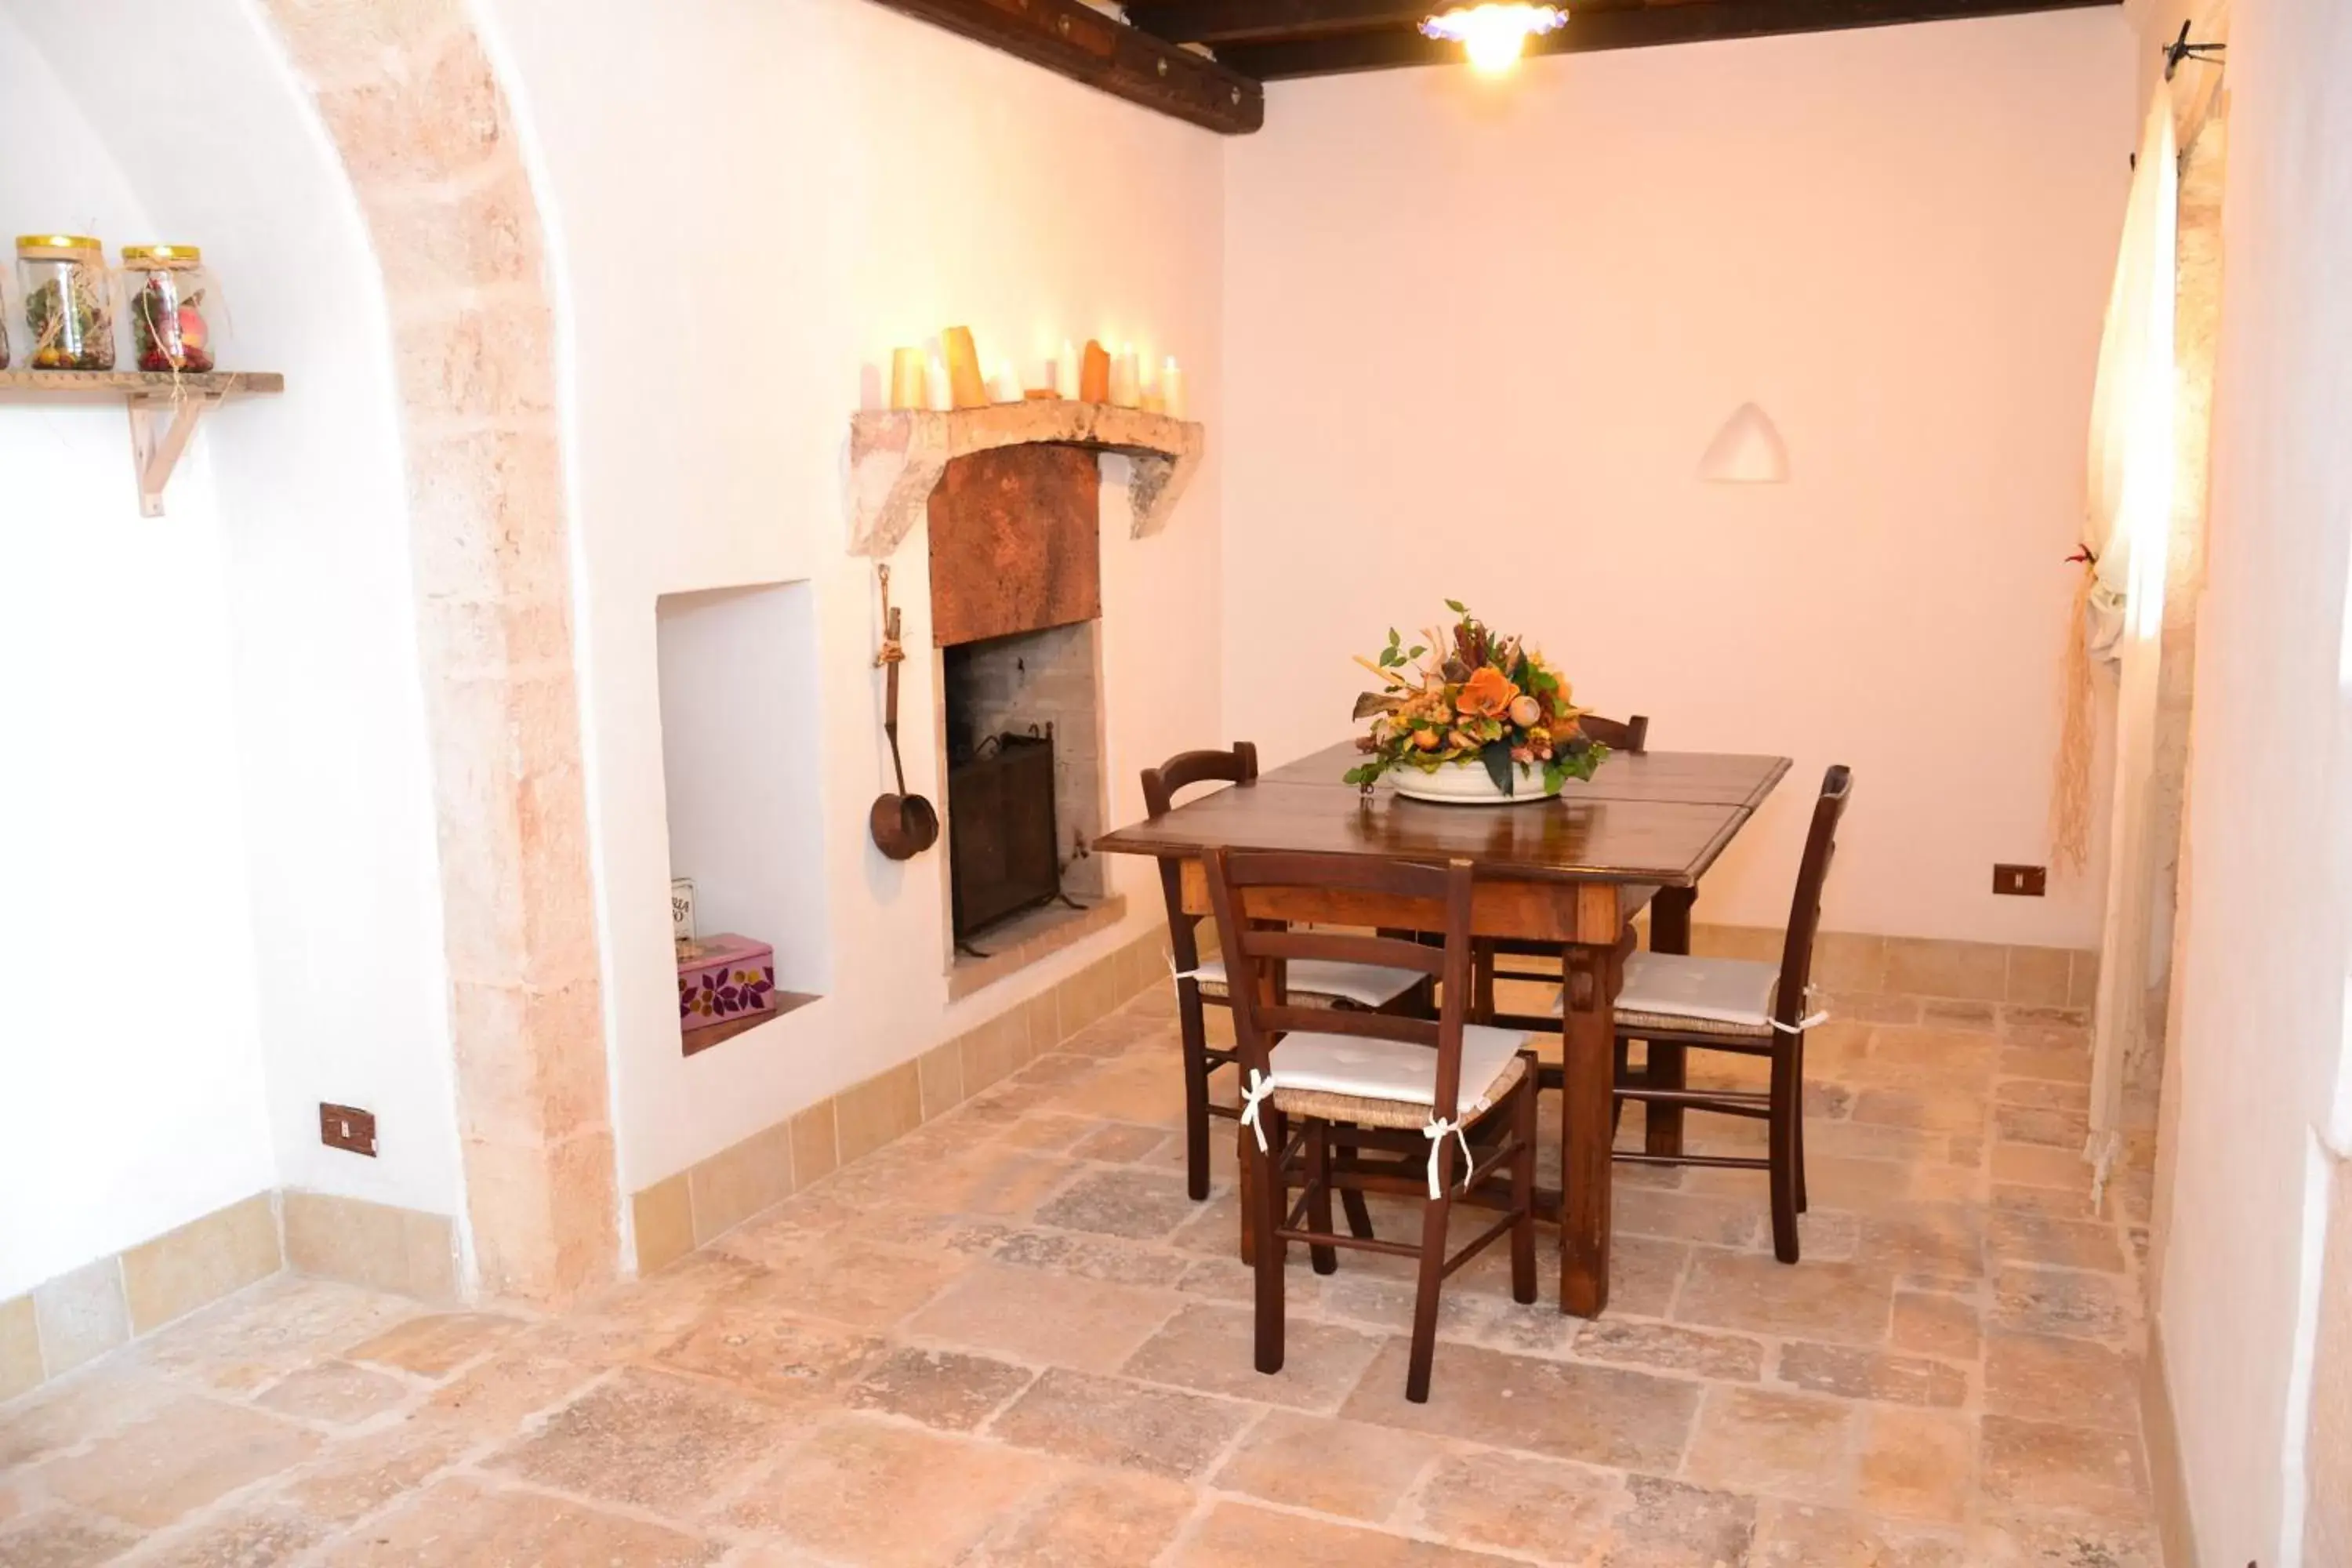 Living room, Dining Area in Agriturismo Masseria Alberotanza